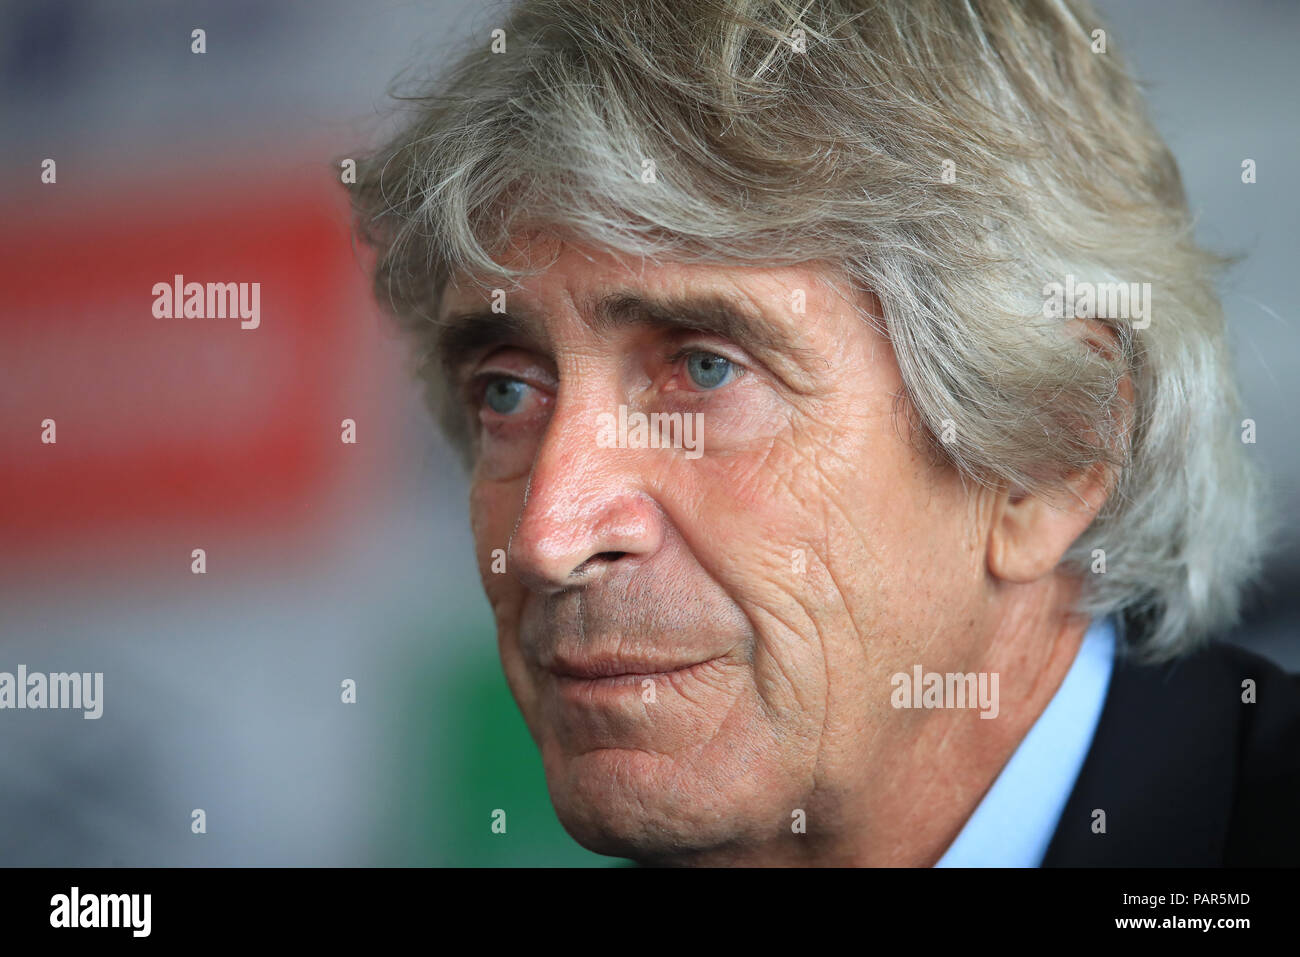 West Ham United manager Manuel Pellegrini während einer Pressekonferenz in der Londoner Stadion, London. Stockfoto